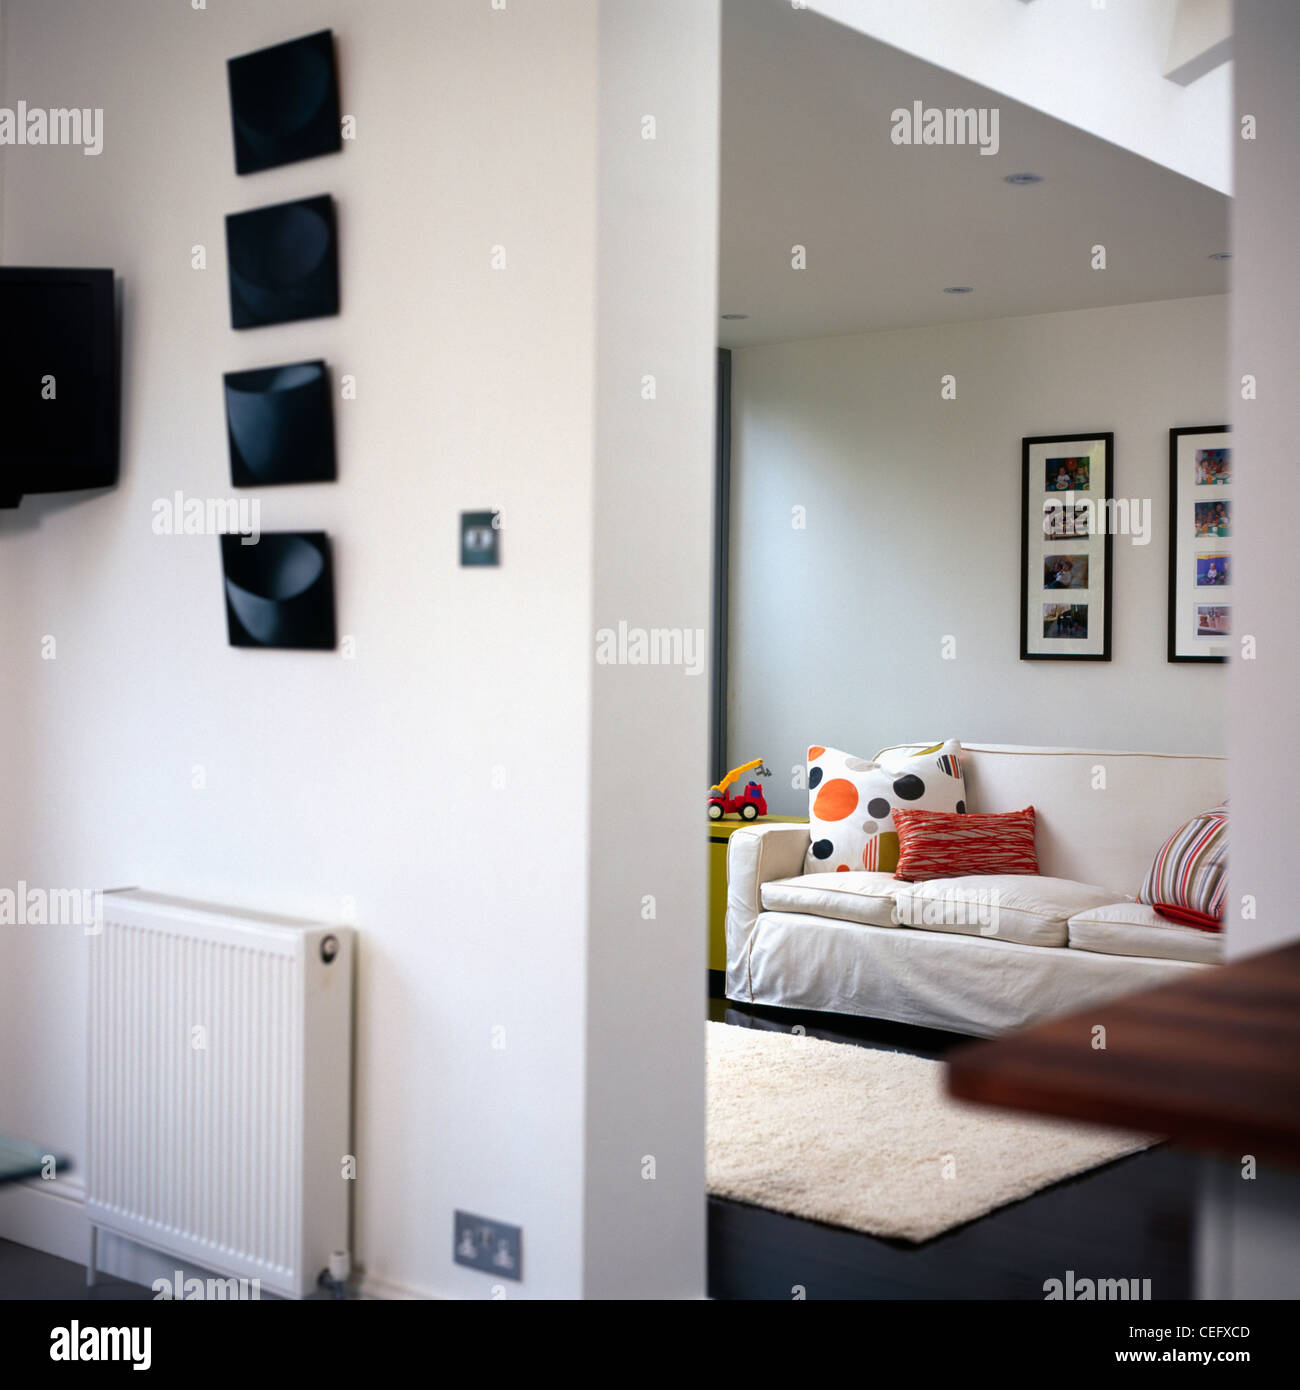 Le immagini sulla parete sopra il radiatore sulla parete divisoria in bianco moderno salotto interno con divano bianco Foto Stock